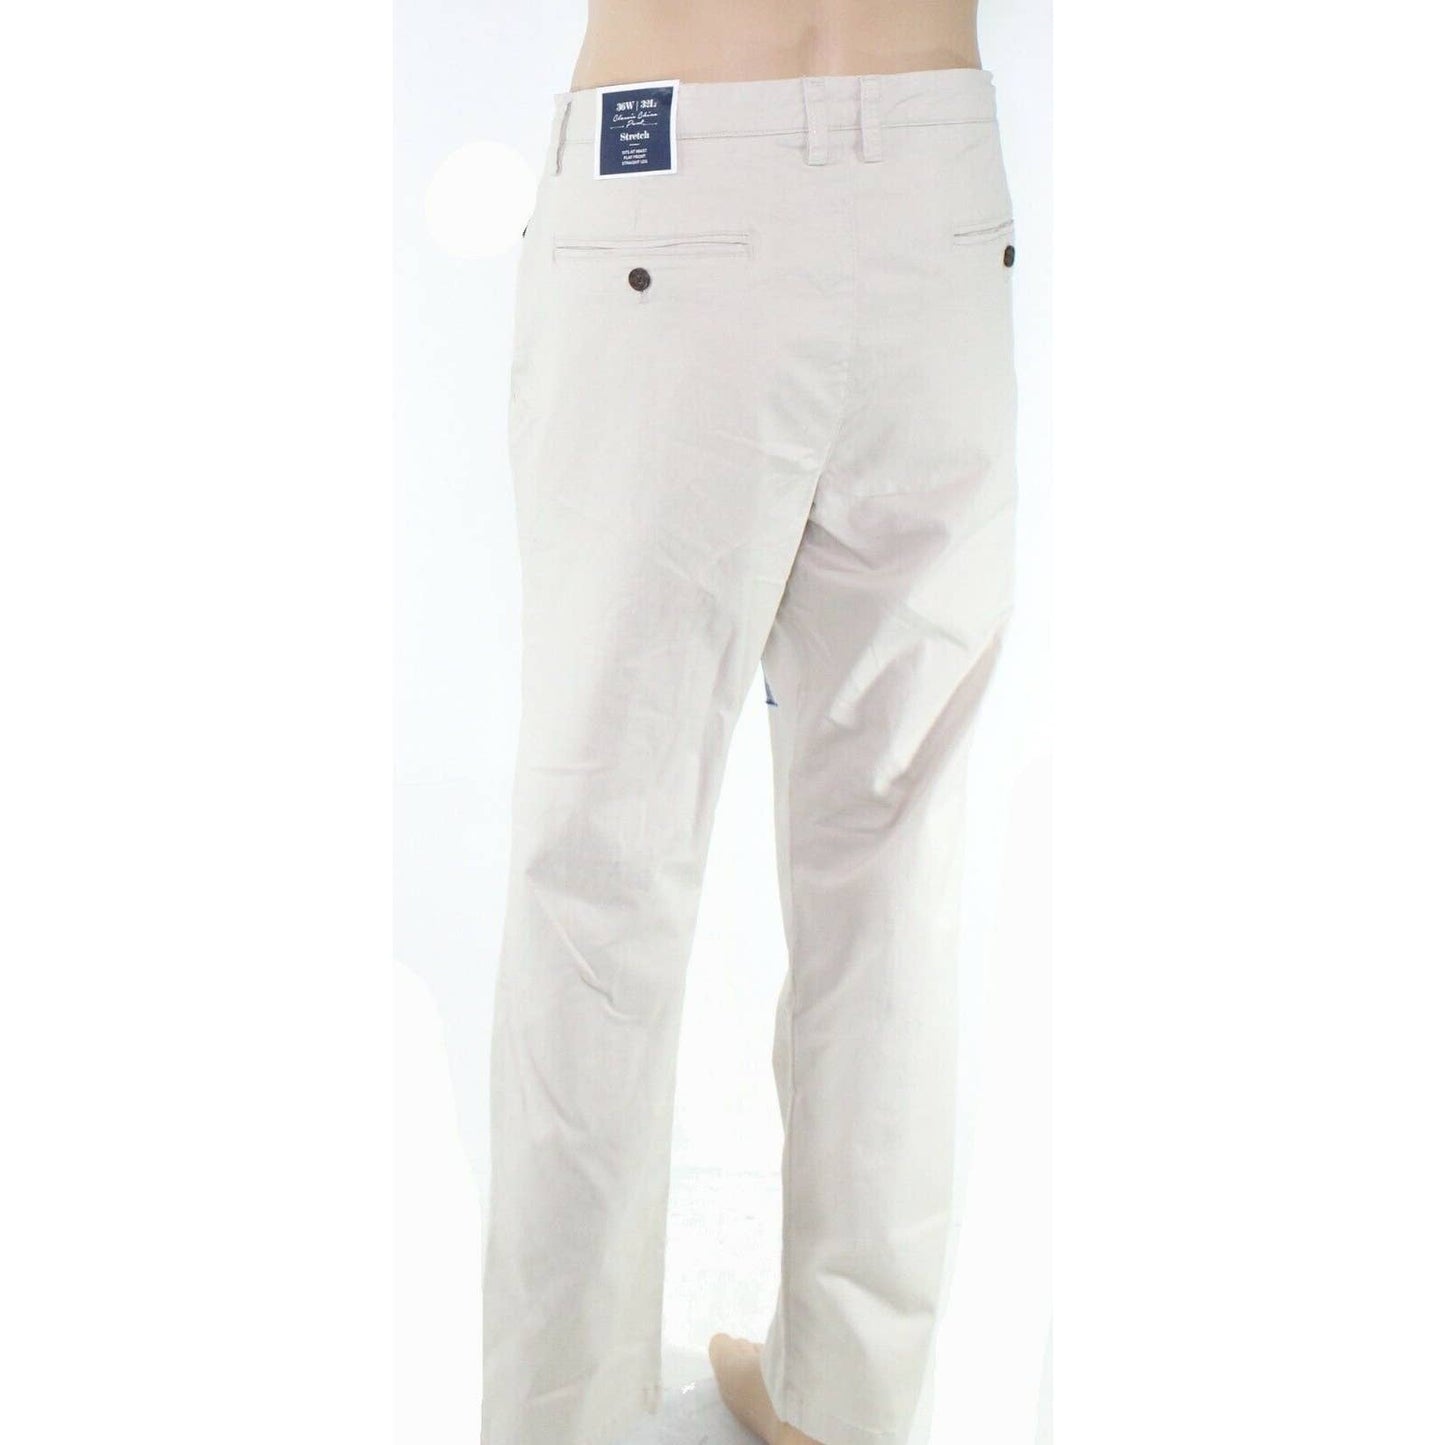 CLUB ROOM, Men's Serine Beige Pants, Classic Fit, Size 34W 32L, NWT $89